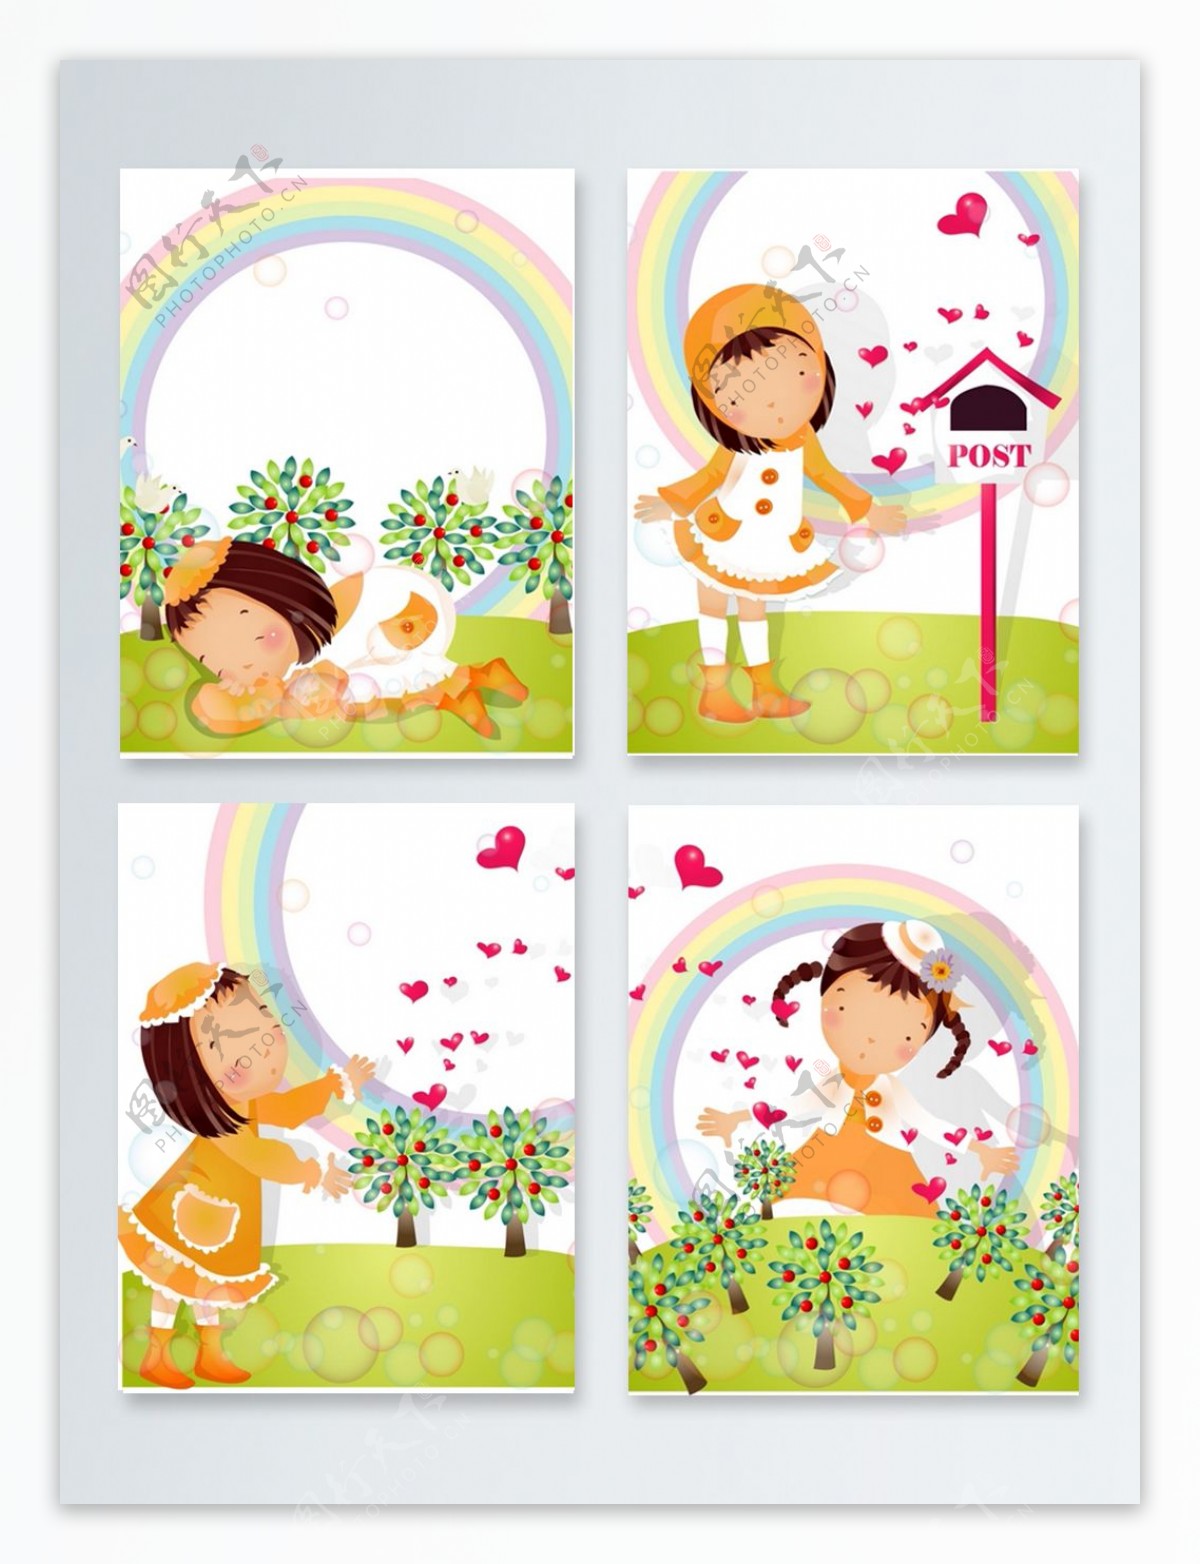 小孩与彩虹创意背景图